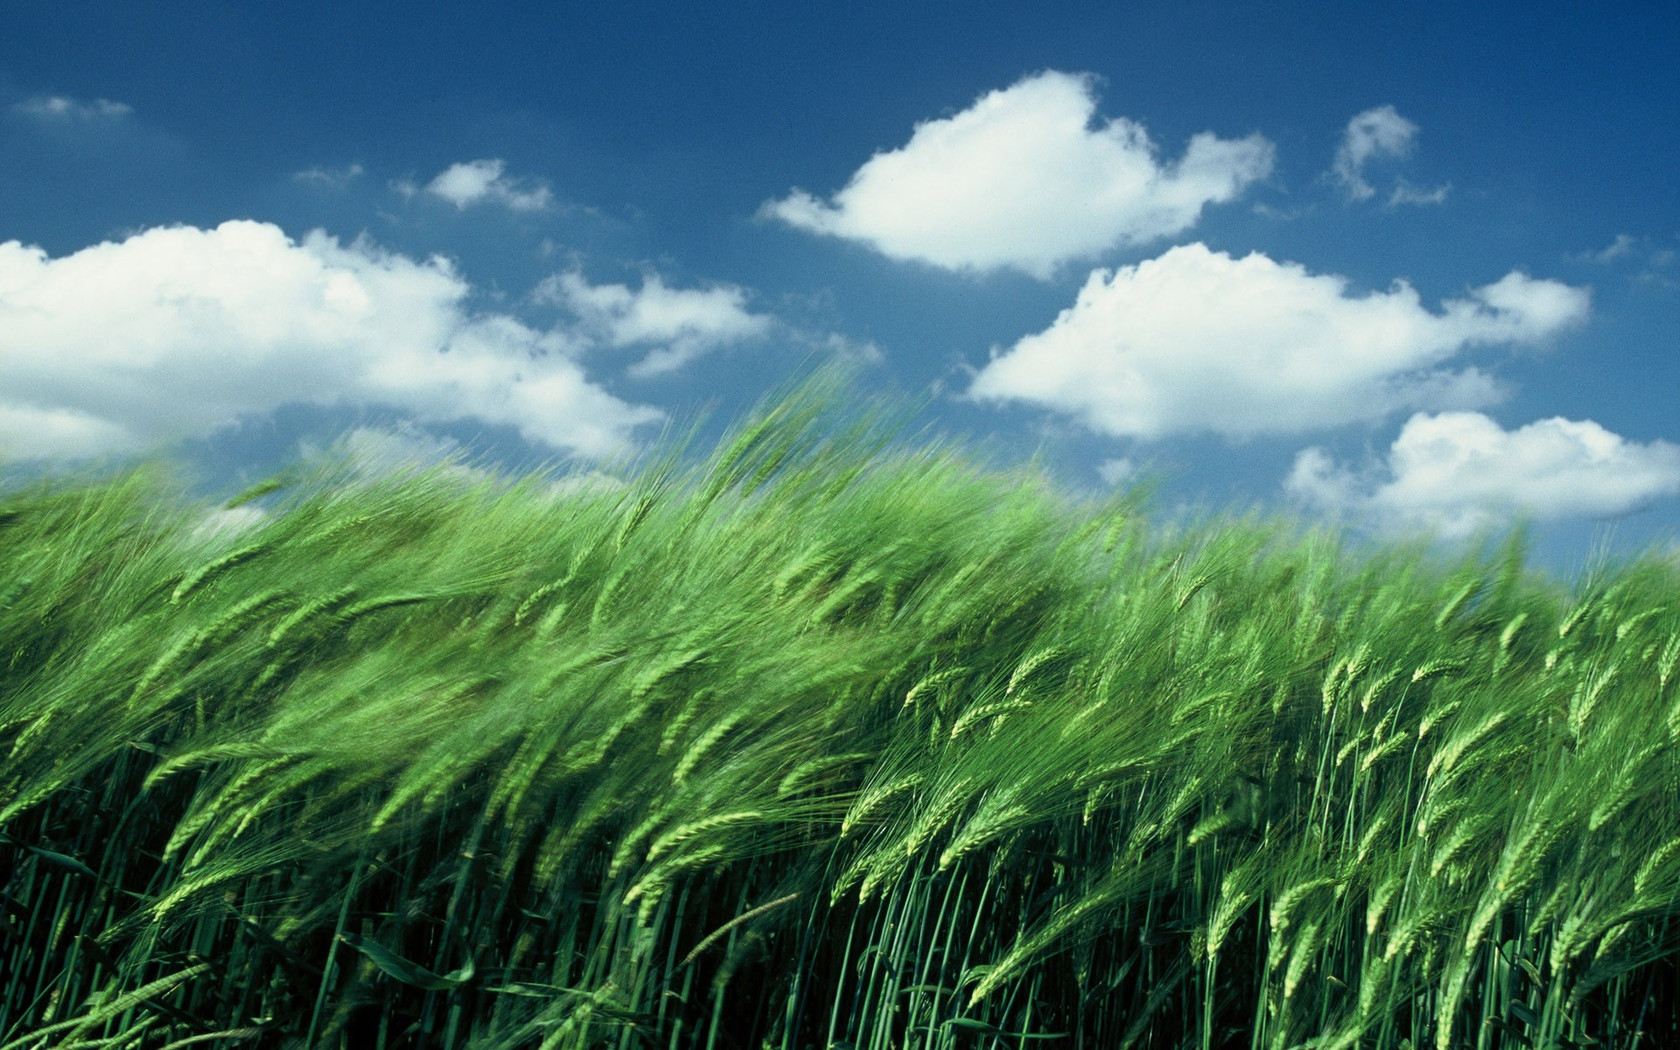 Wheat field in the wind wallpaper 8267 1680x1050